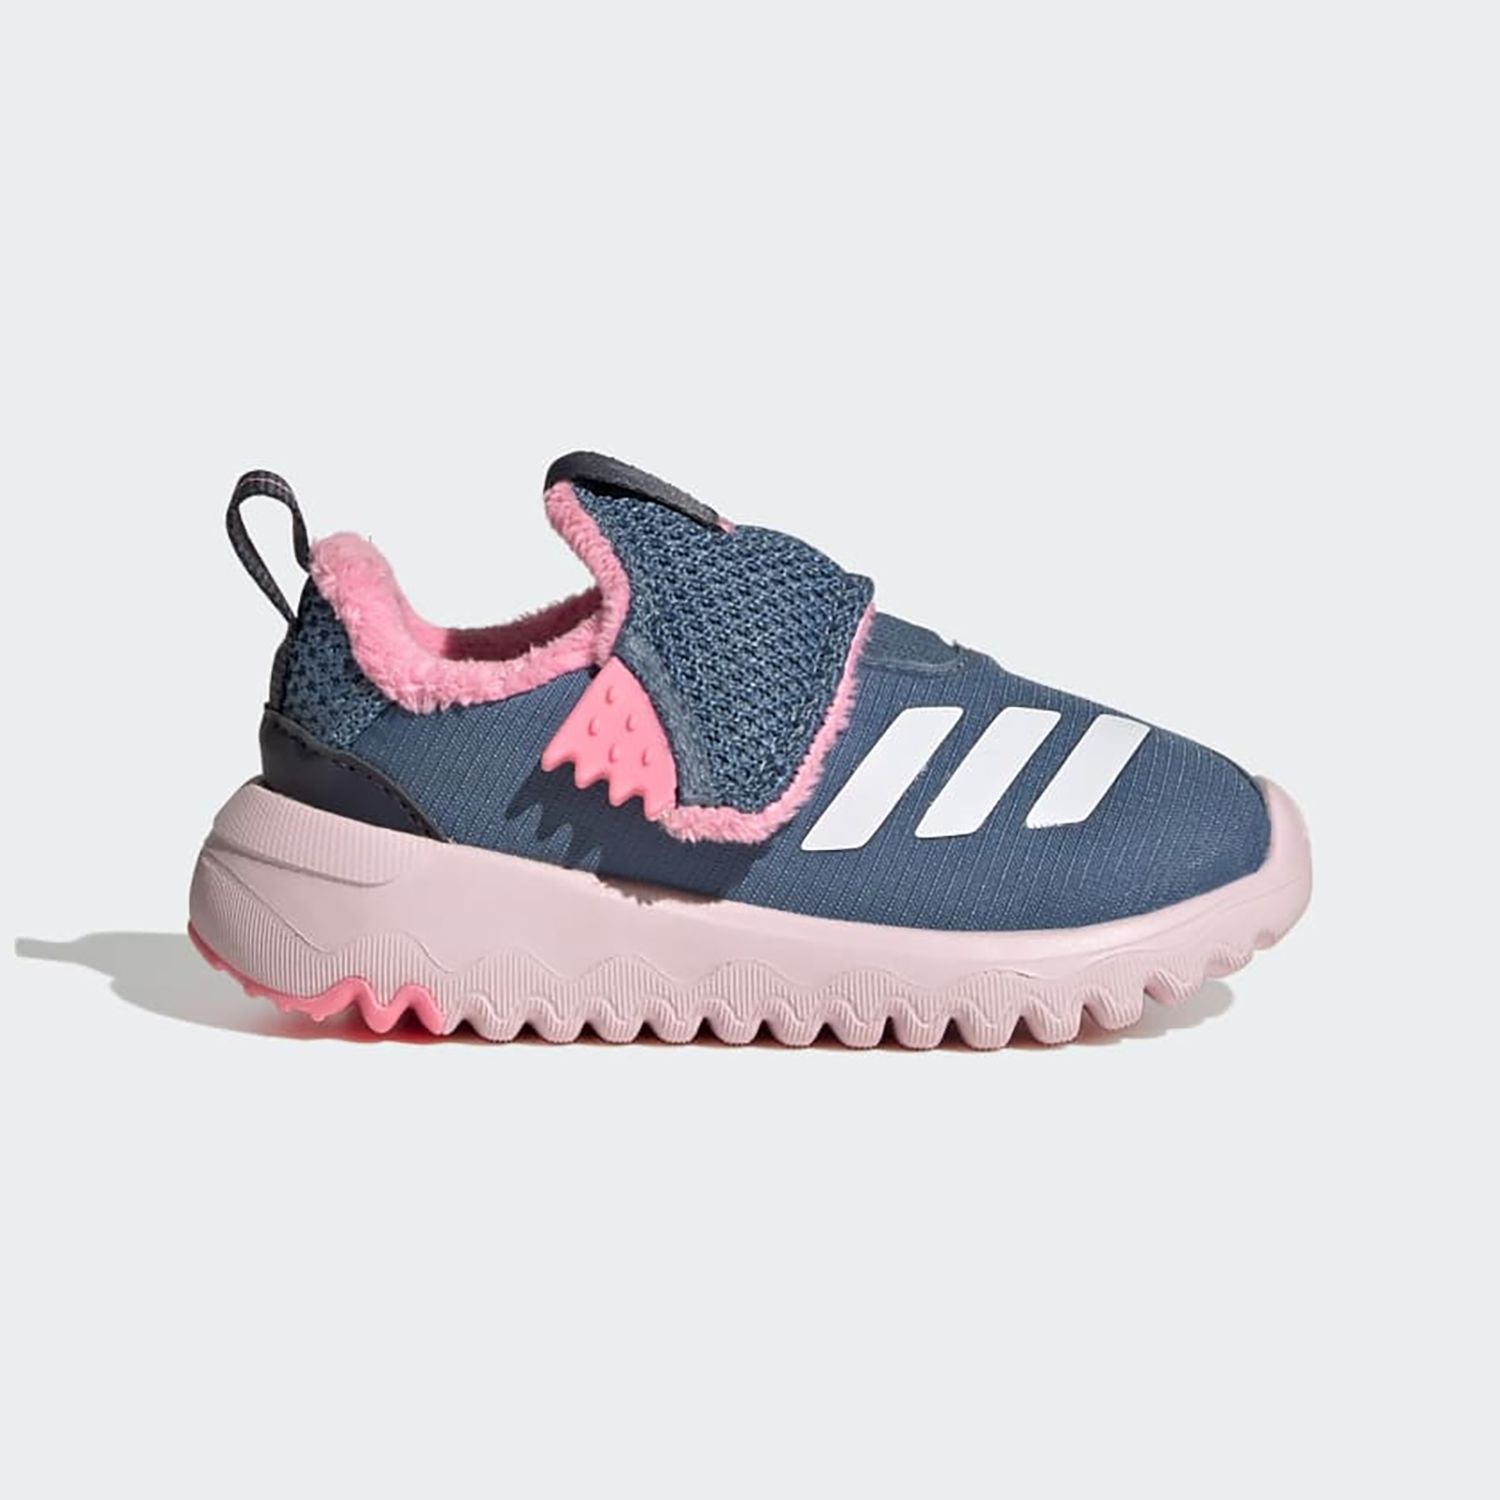 Кроссовки Adidas Suru365 I для девочек, размер 25, GY6677 носки детские adidas нвд разно ный 18 20